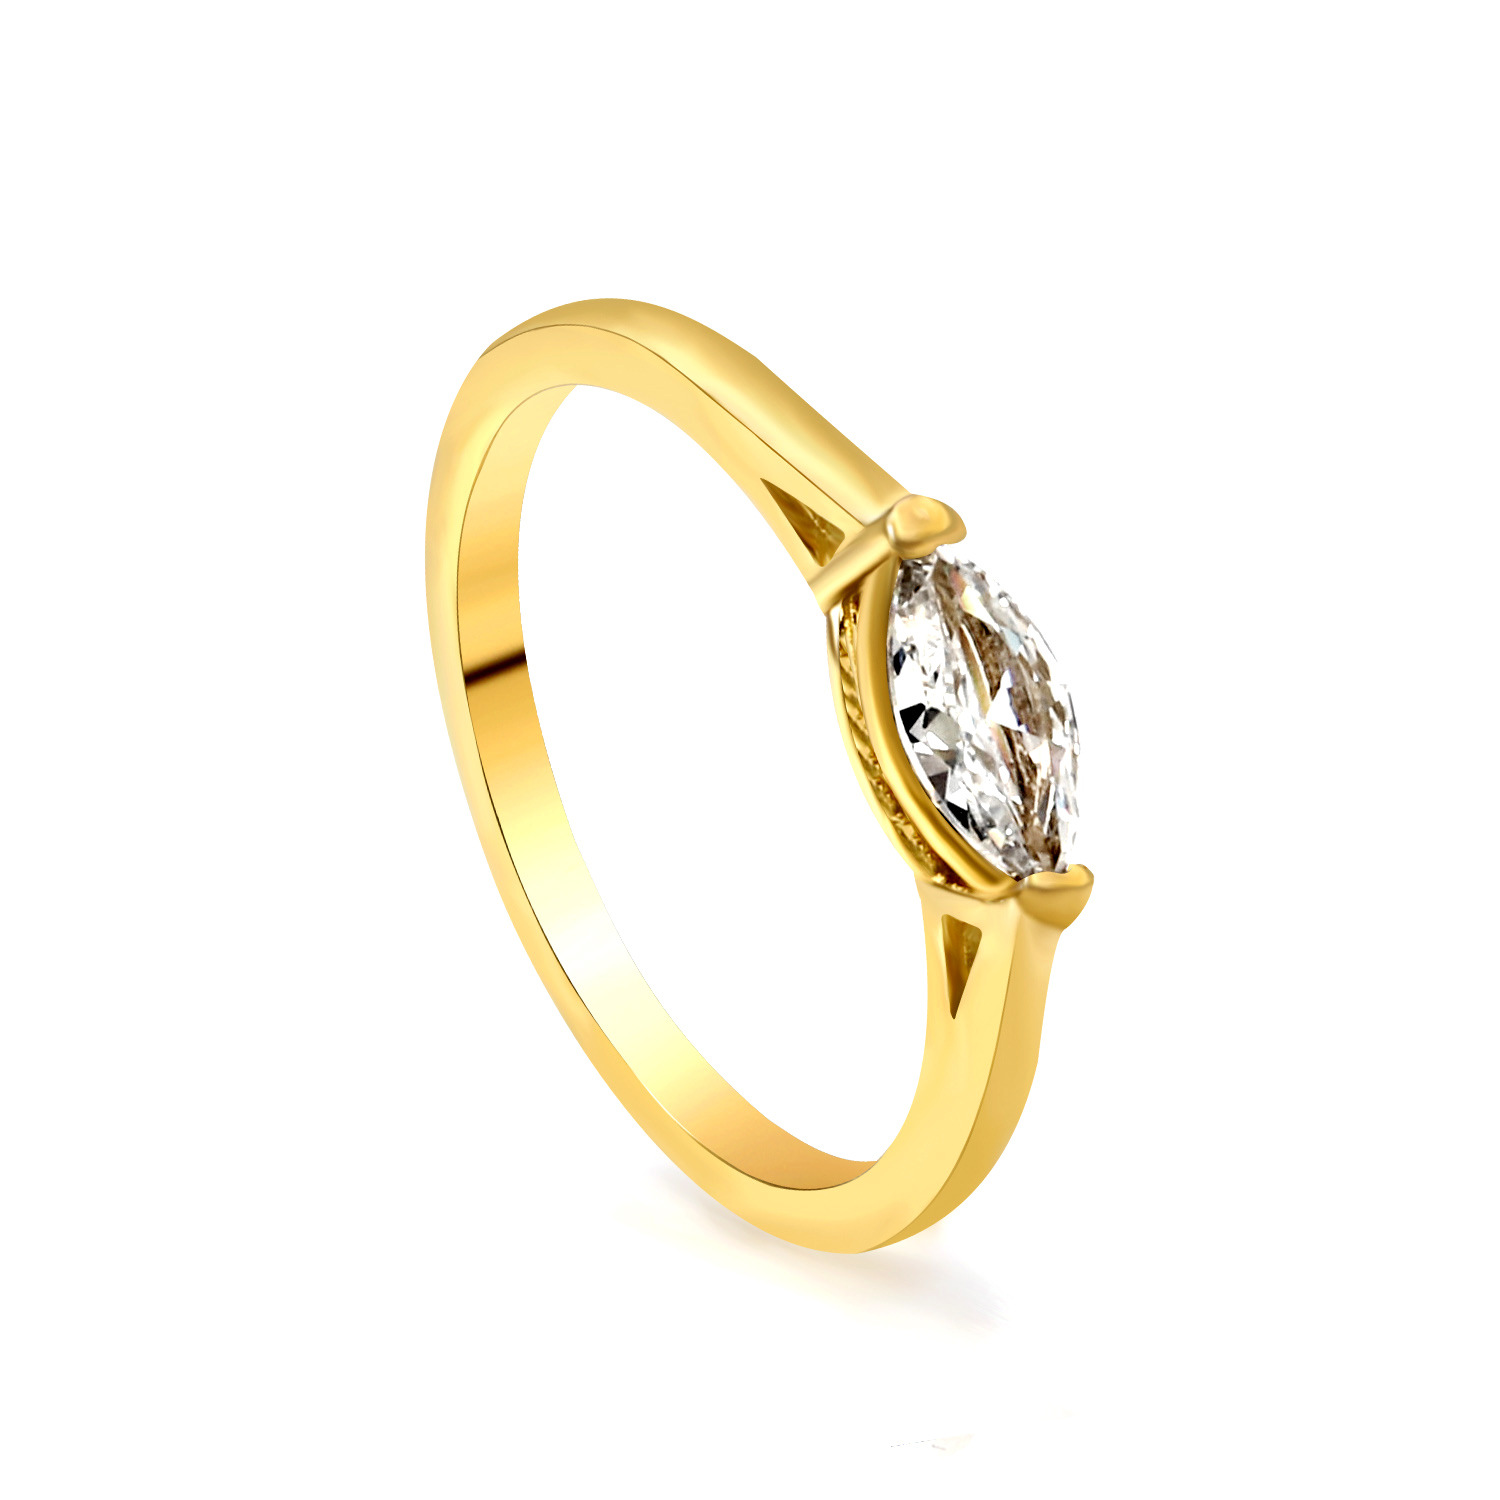 Gold and white diamond ring RI145106-9G